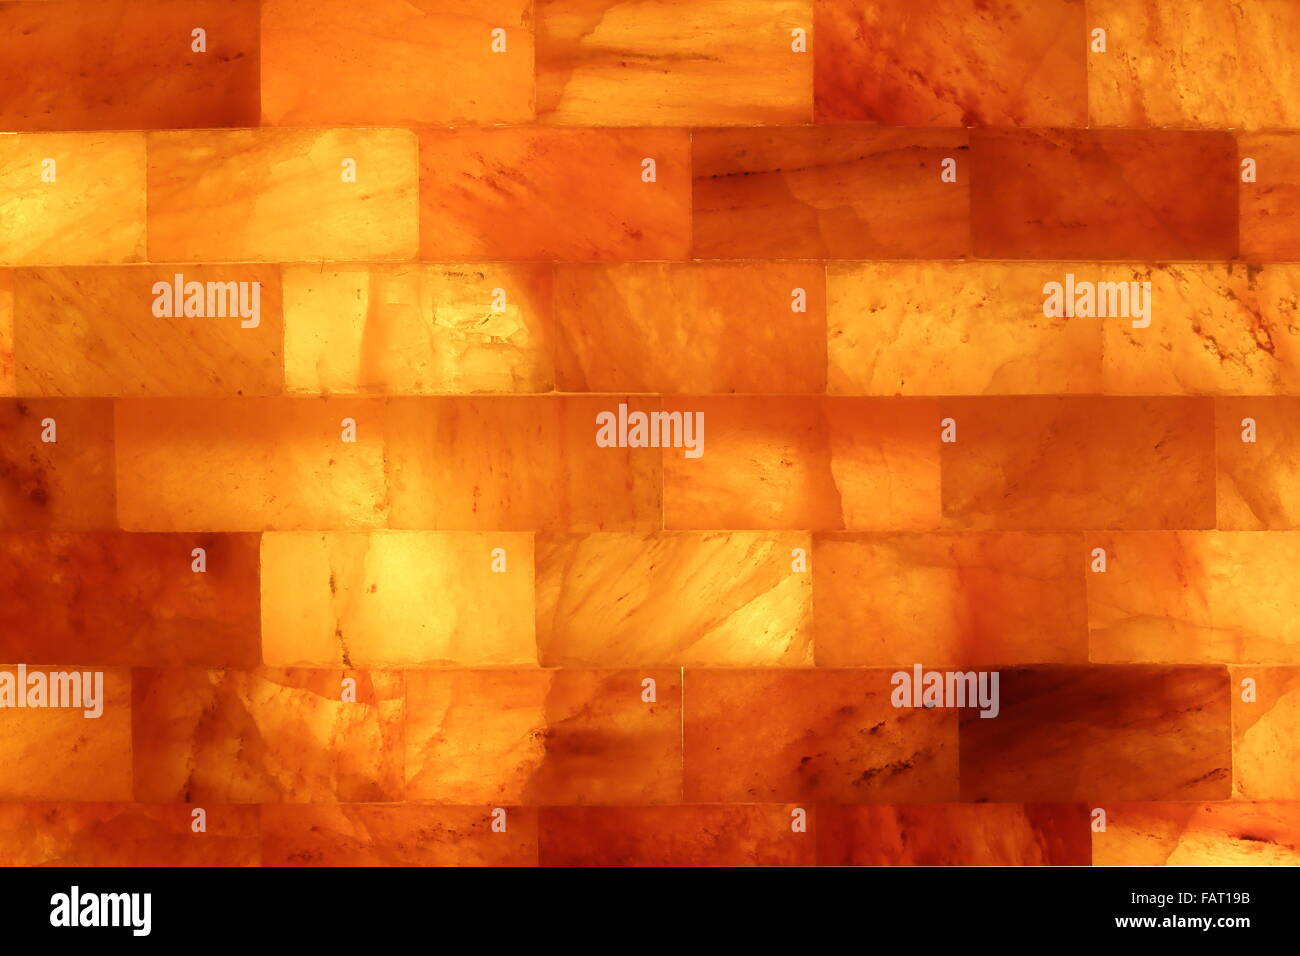 Mur de pierre de sel dans une grotte de sel Salarium Photo Stock - Alamy